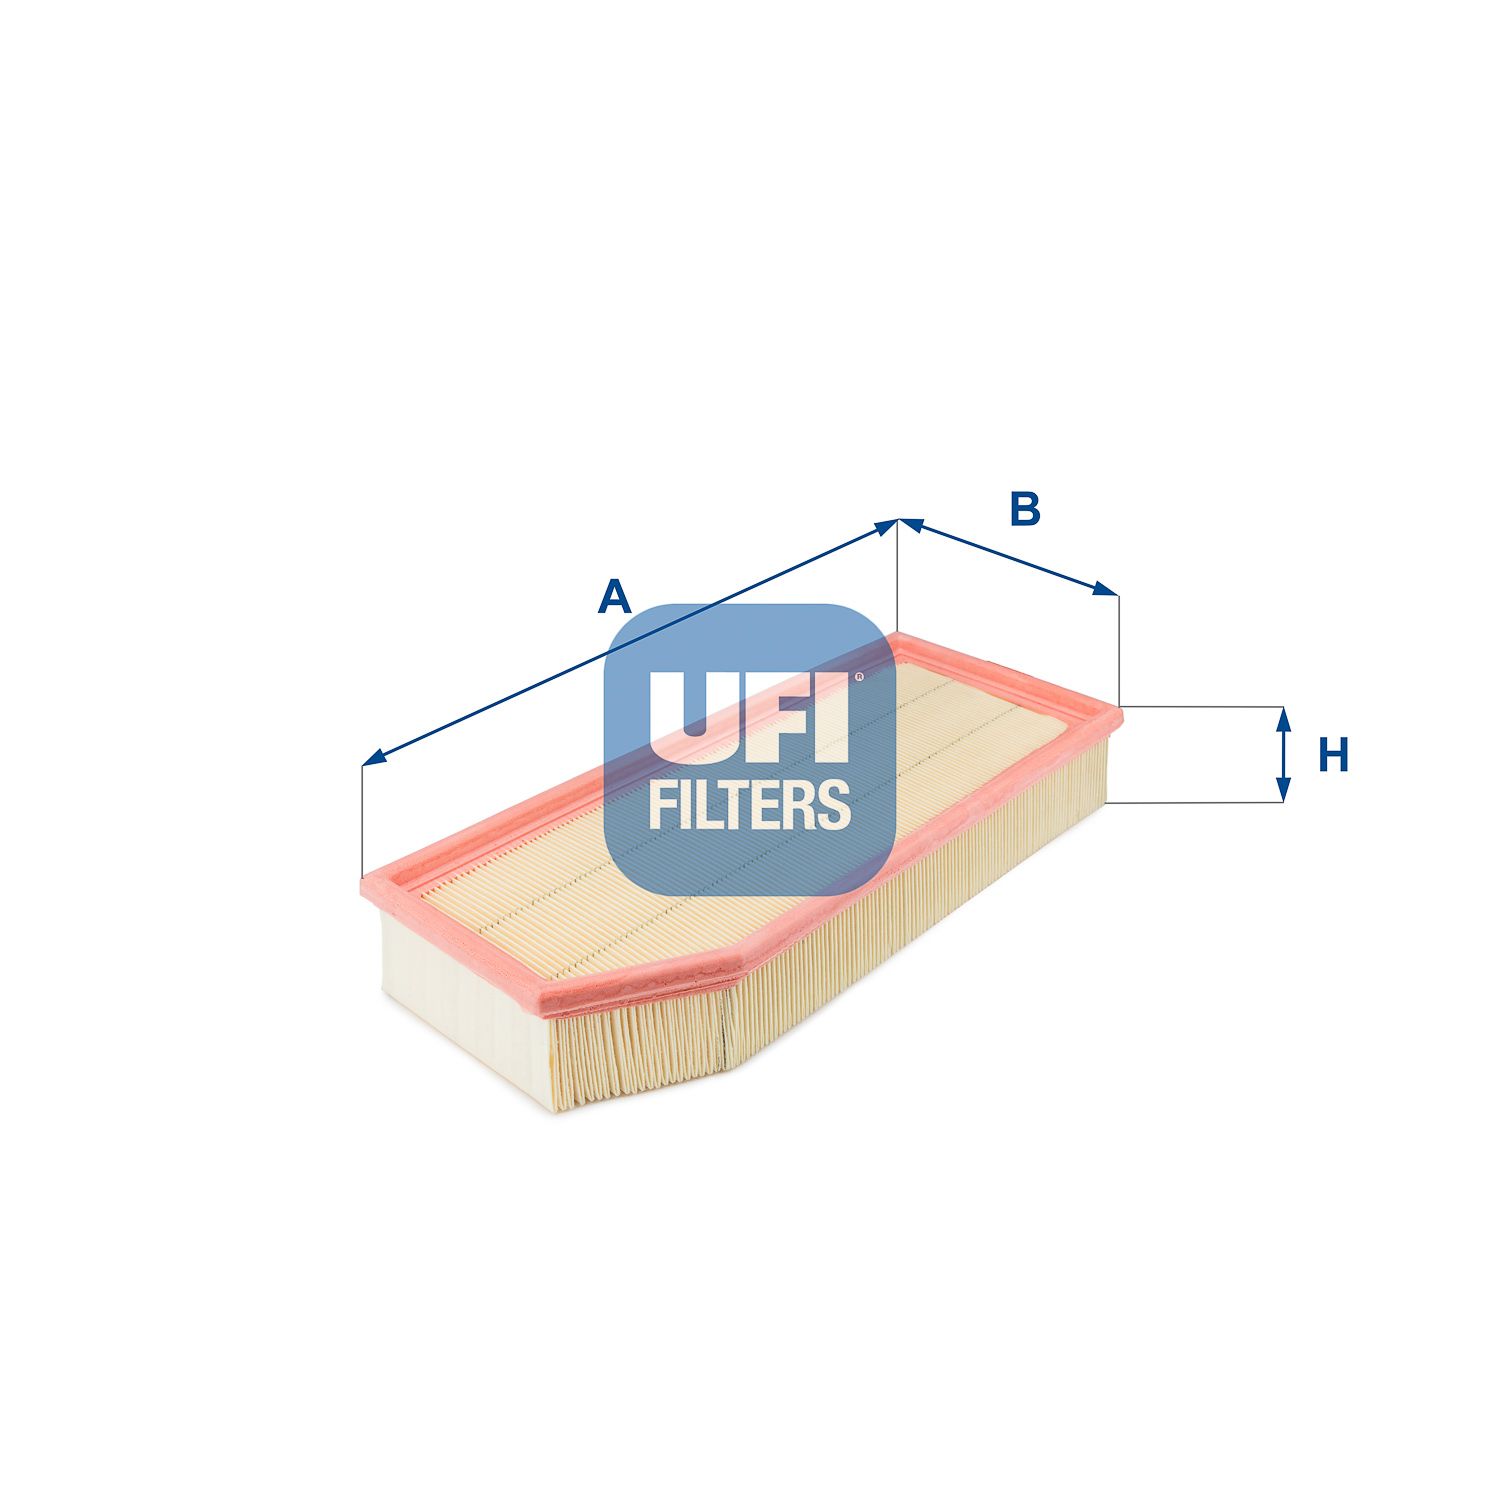 Vzduchový filtr UFI 30.148.00